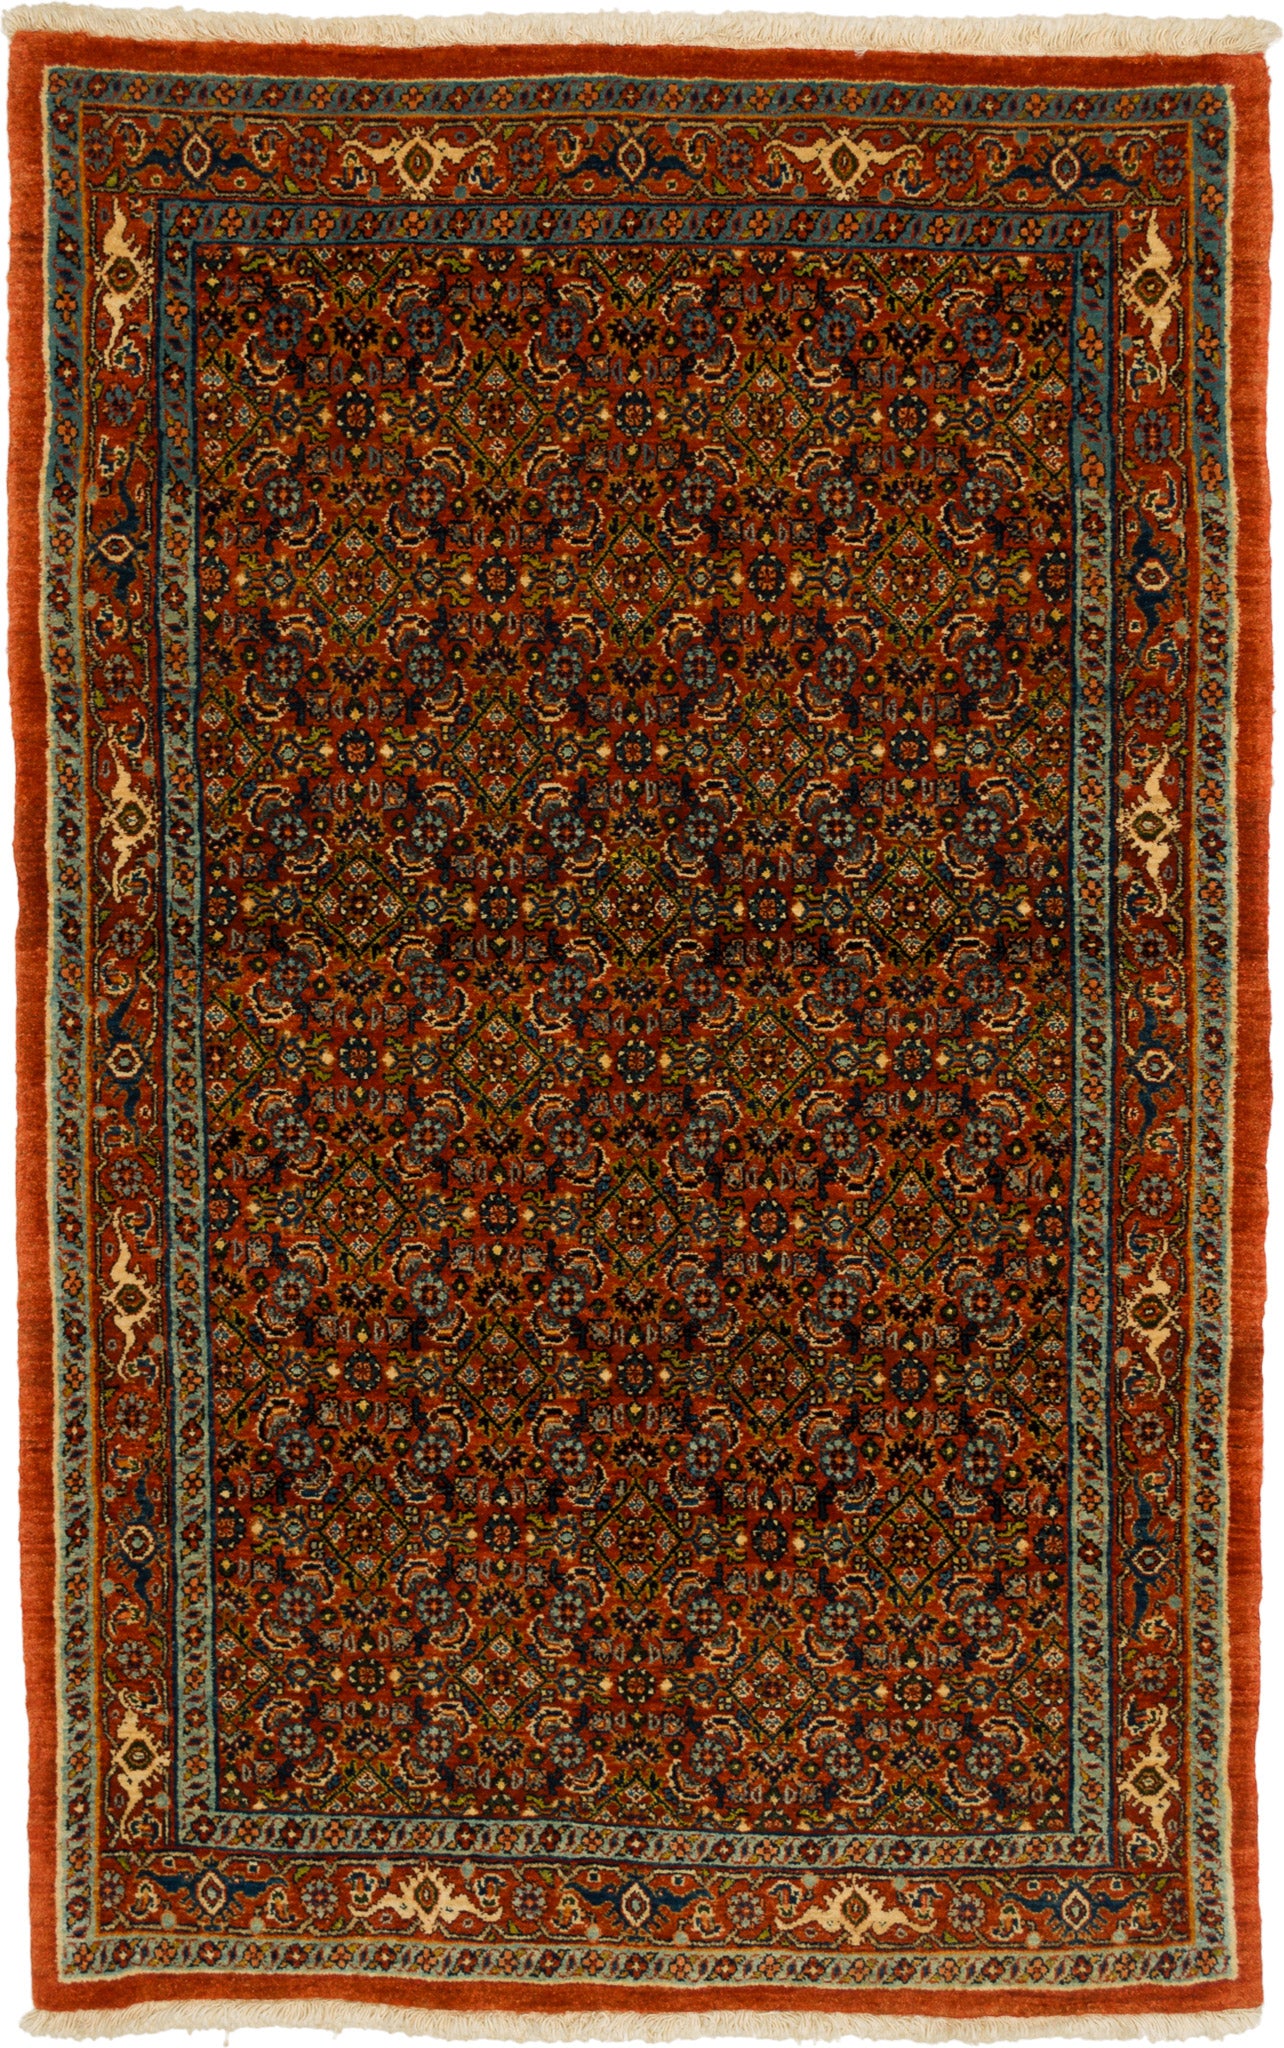 Bidjar Mirzai, 159 × 102 cm